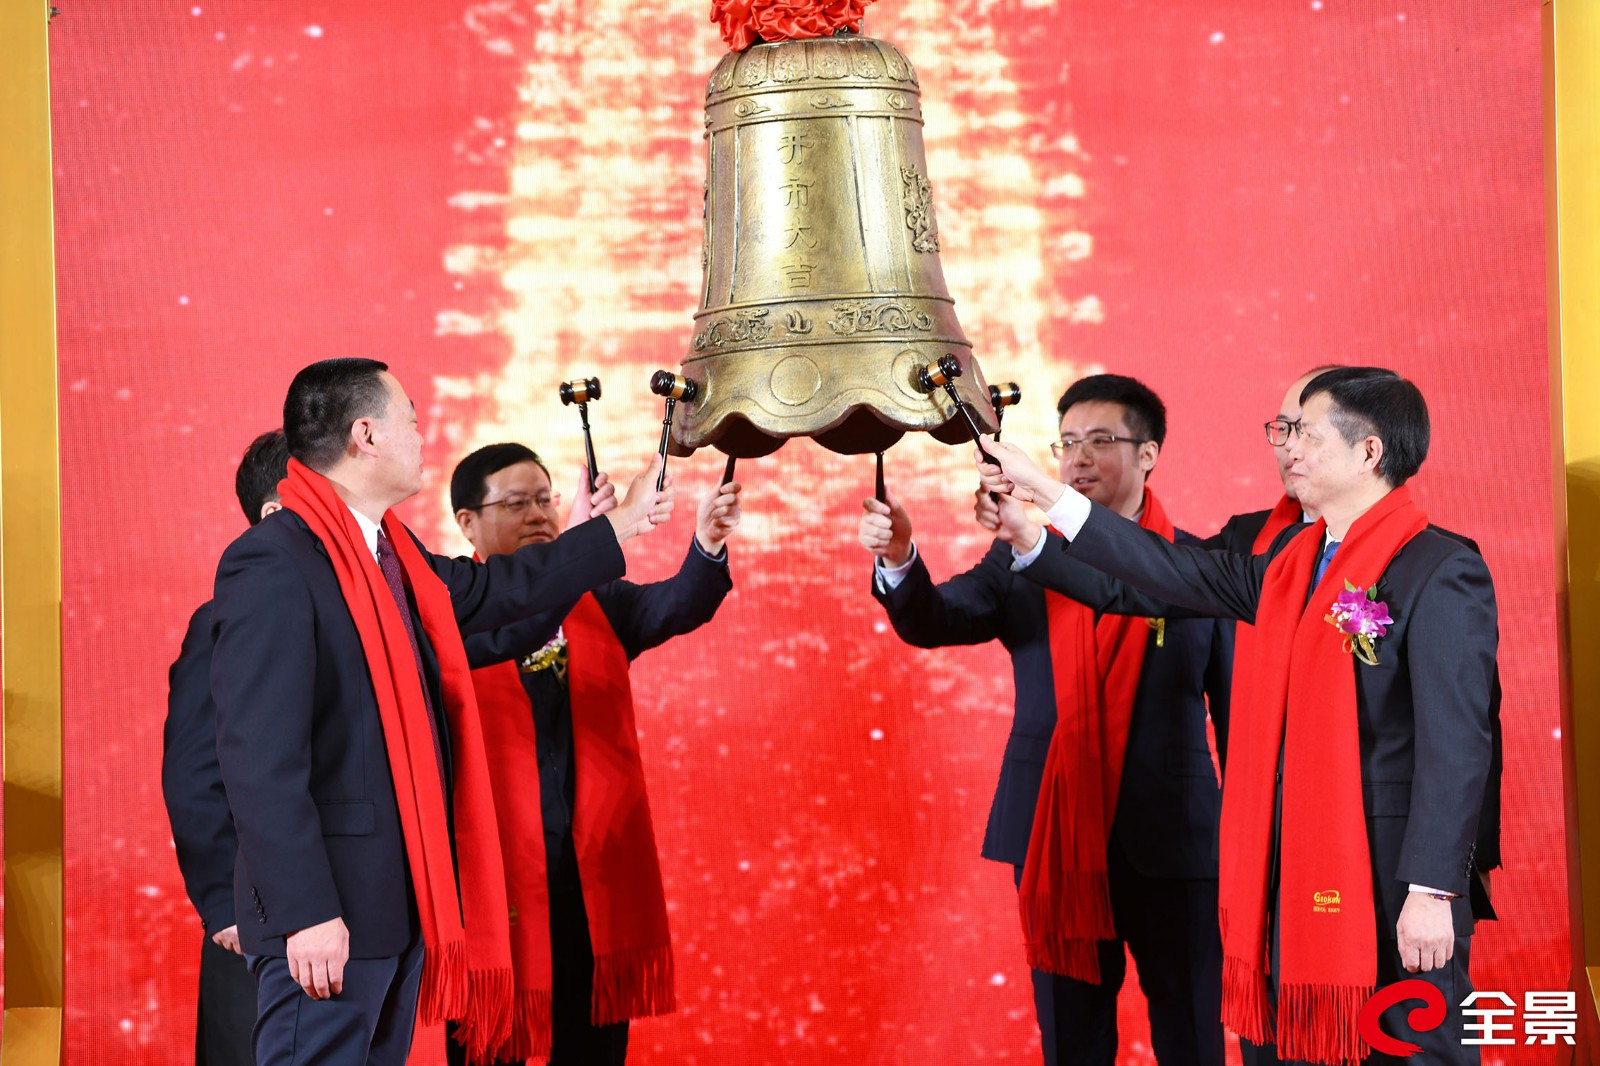 喜讯 | 热烈祝贺基康仪器在北京证券交易所成功上市